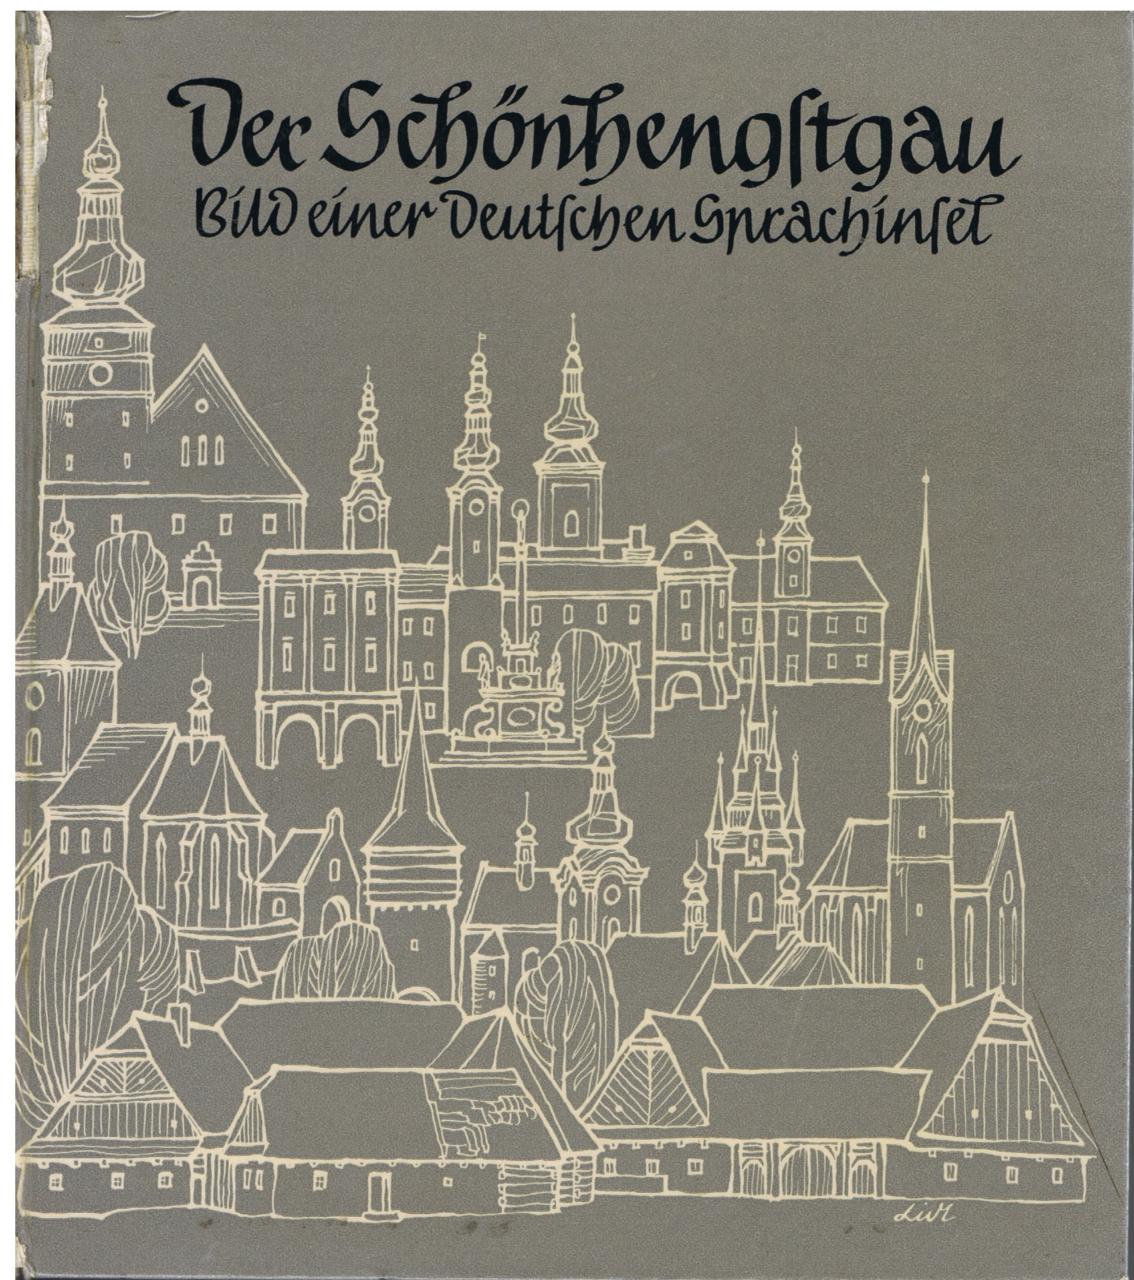 Heimatbuch, Der Schönhengstgau Bild einer deutschen Sprachinsel, 1962